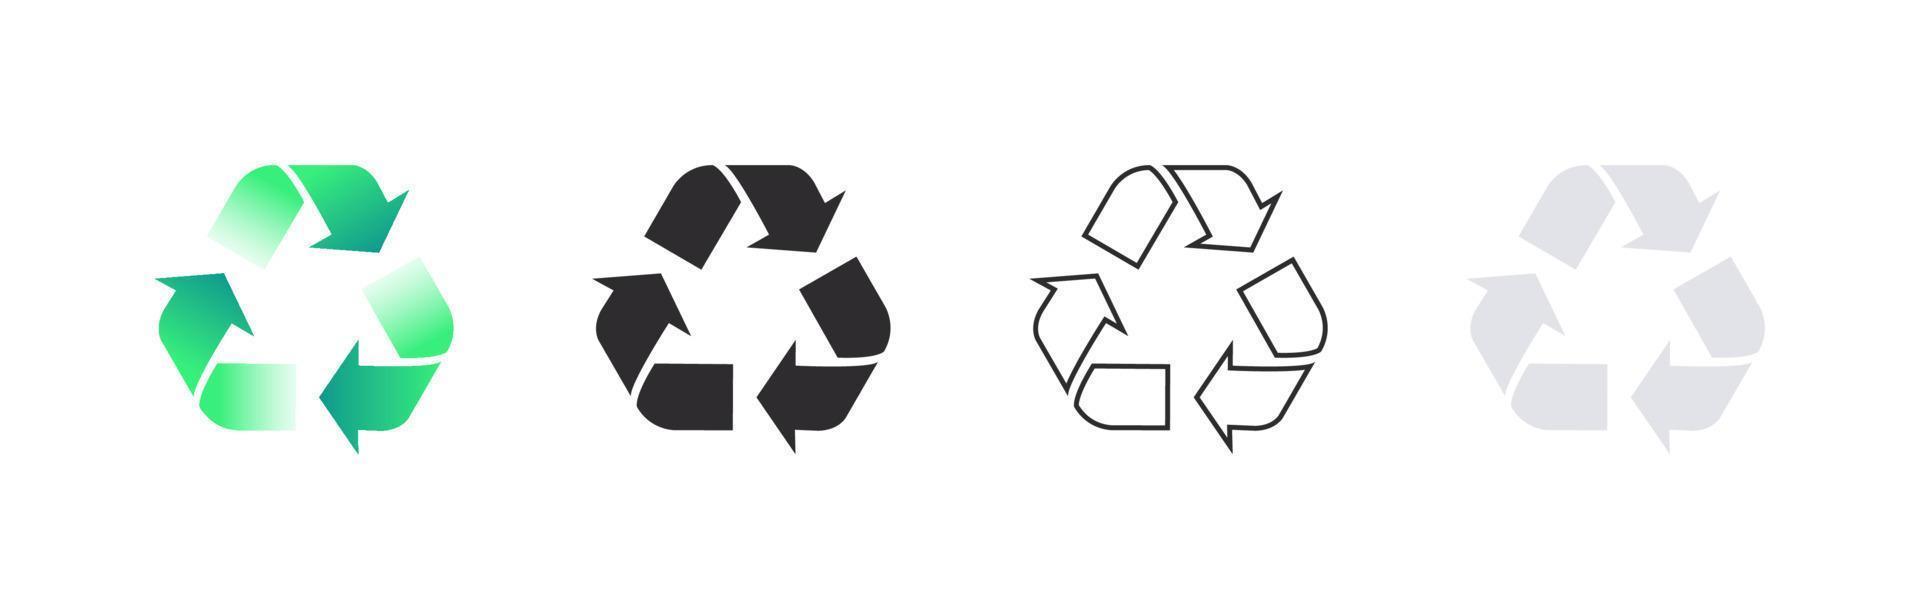 conceito de ícones de reciclagem. materiais recicláveis. embalagem e reciclagem. ilustração vetorial vetor